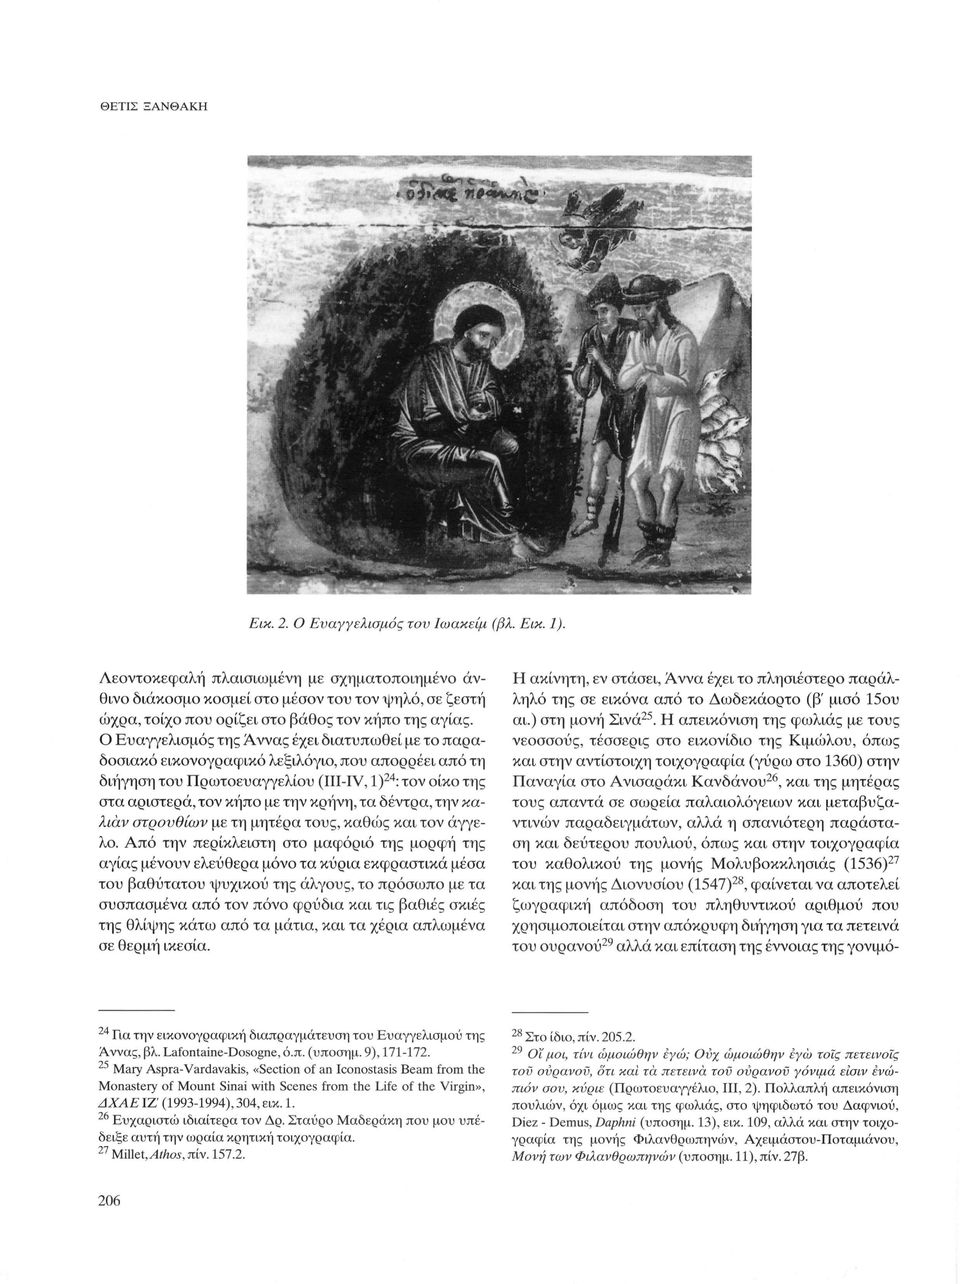 Ο Ευαγγελισμός της Αννας έχει διατυπωθεί με το παραδοσιακό εικονογραφικό λεξιλόγιο, που απορρέει από τη διήγηση του Πρωτοευαγγελίου (III-IV, Ι) 24 : τον οίκο της στα αριστερά, τον κήπο με την κρήνη,